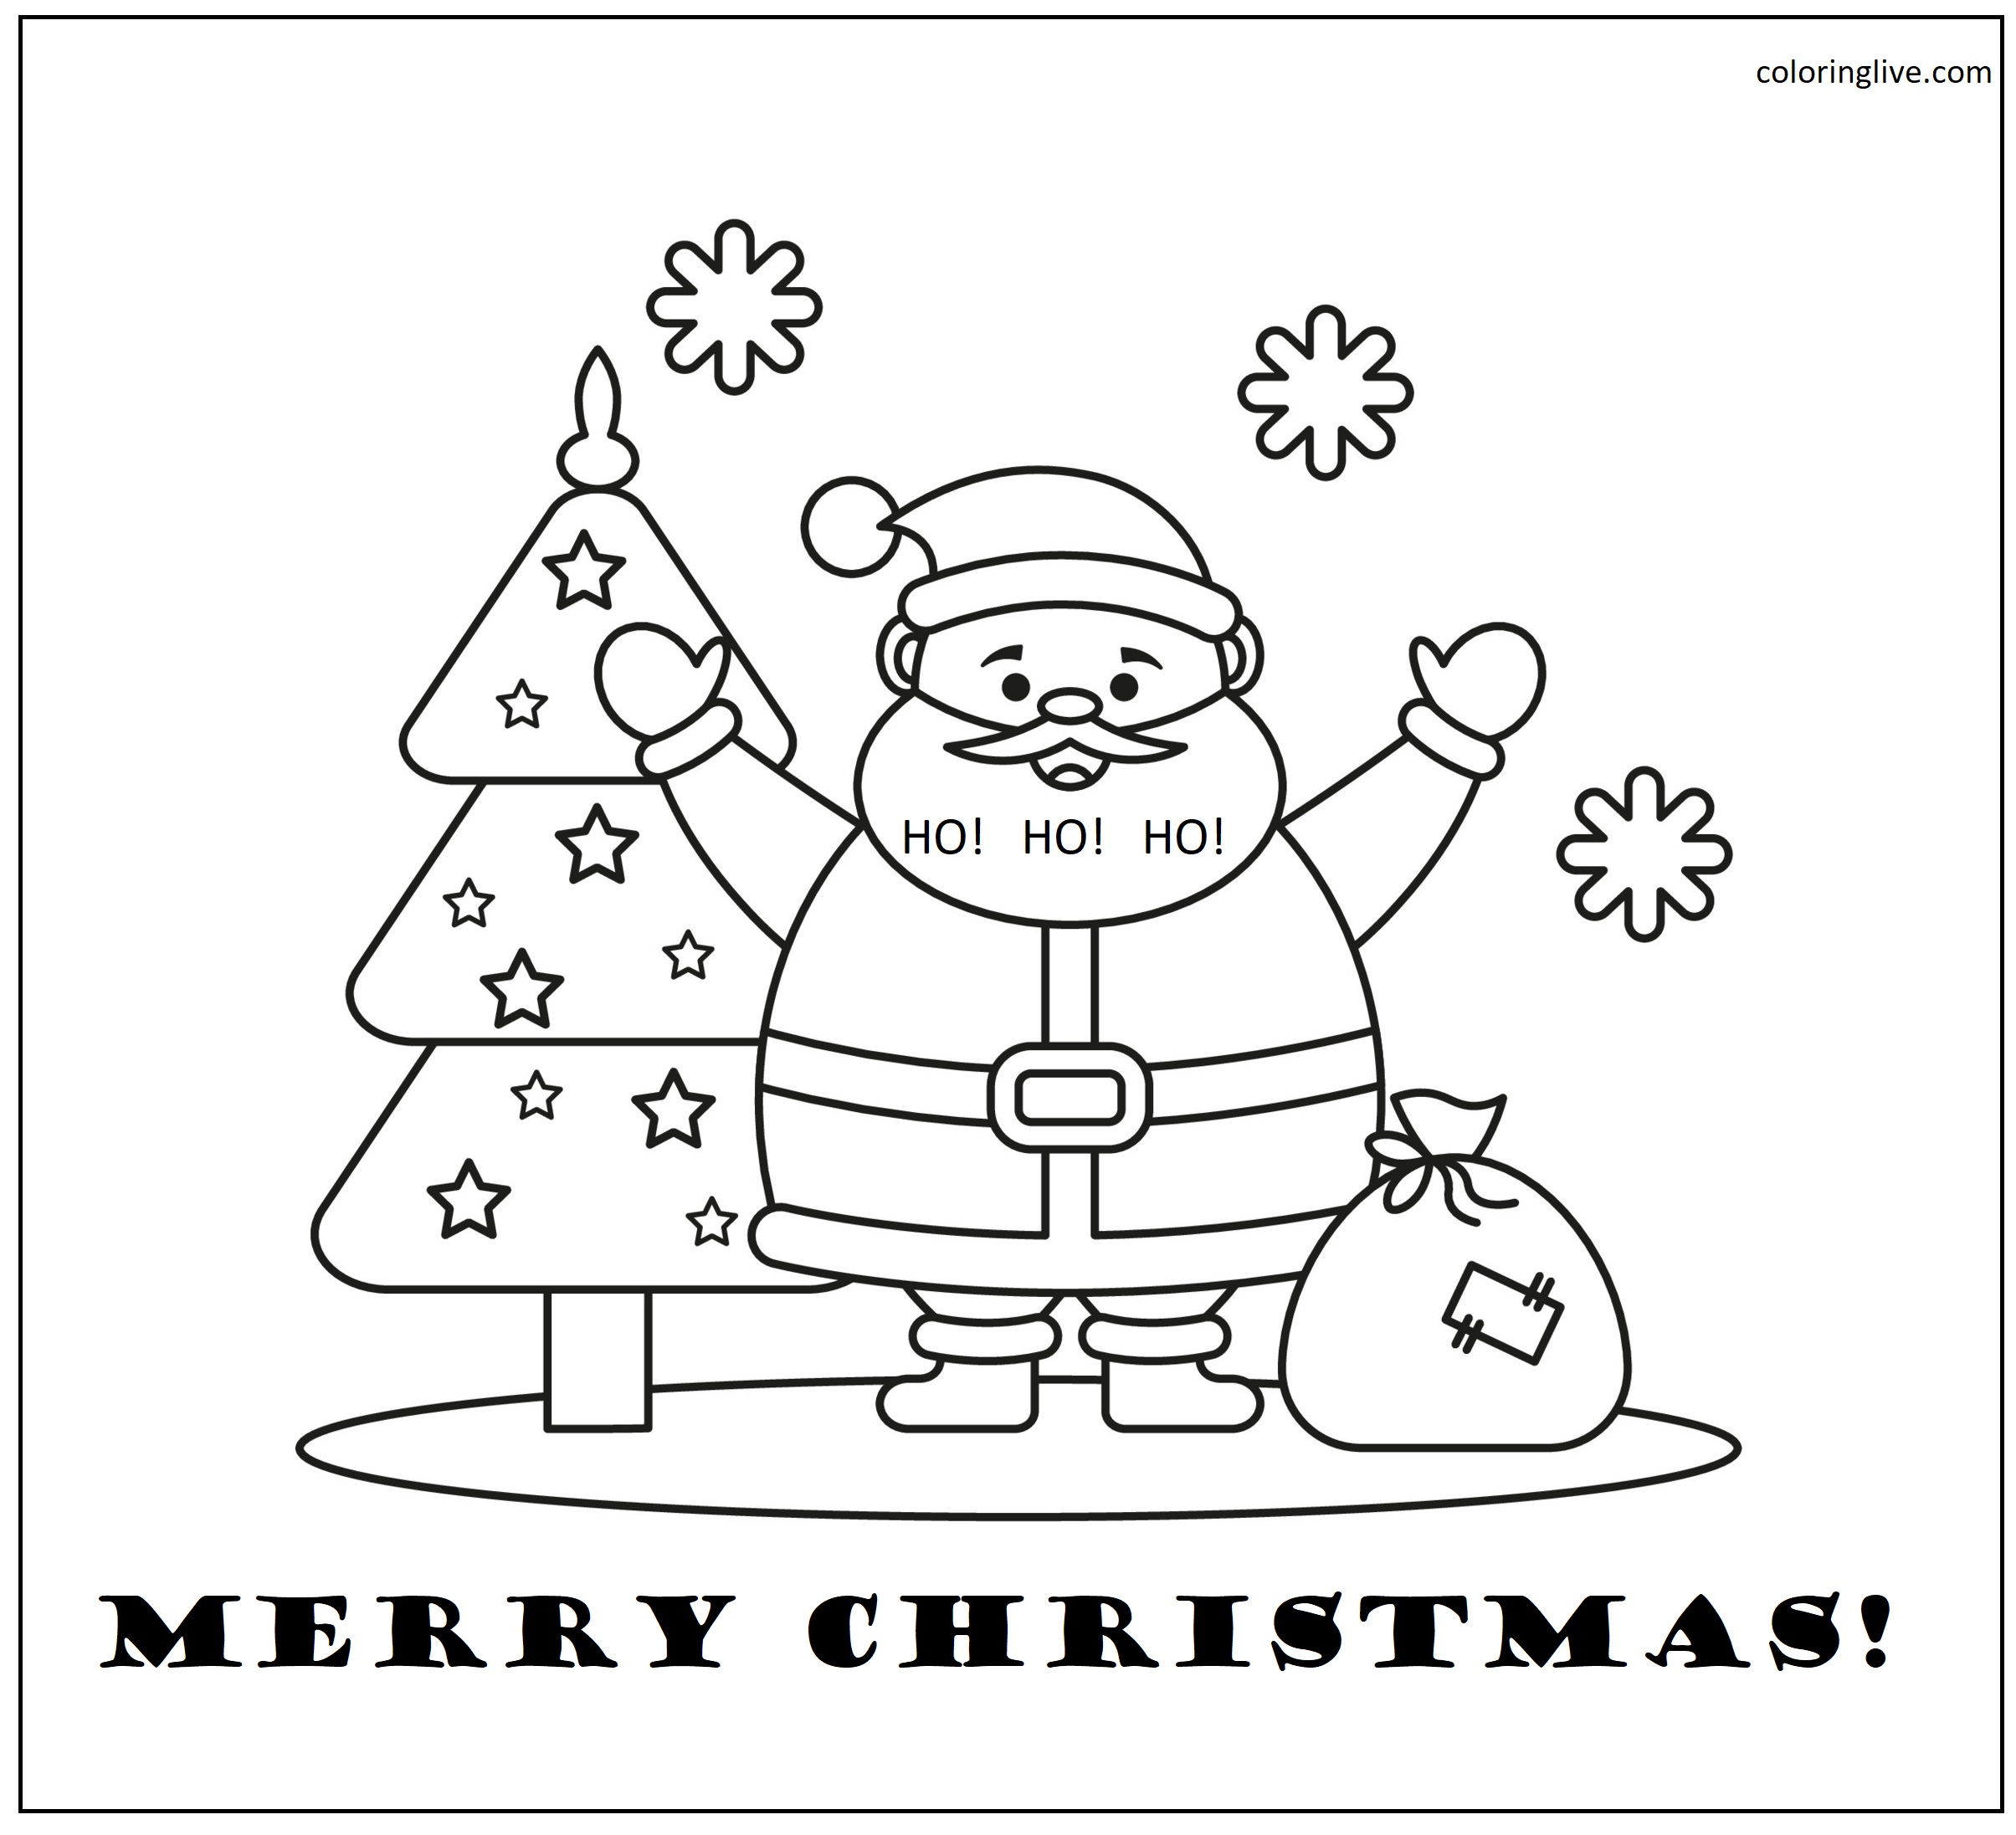 Printable Christmas Santa Coloring Page for kids.